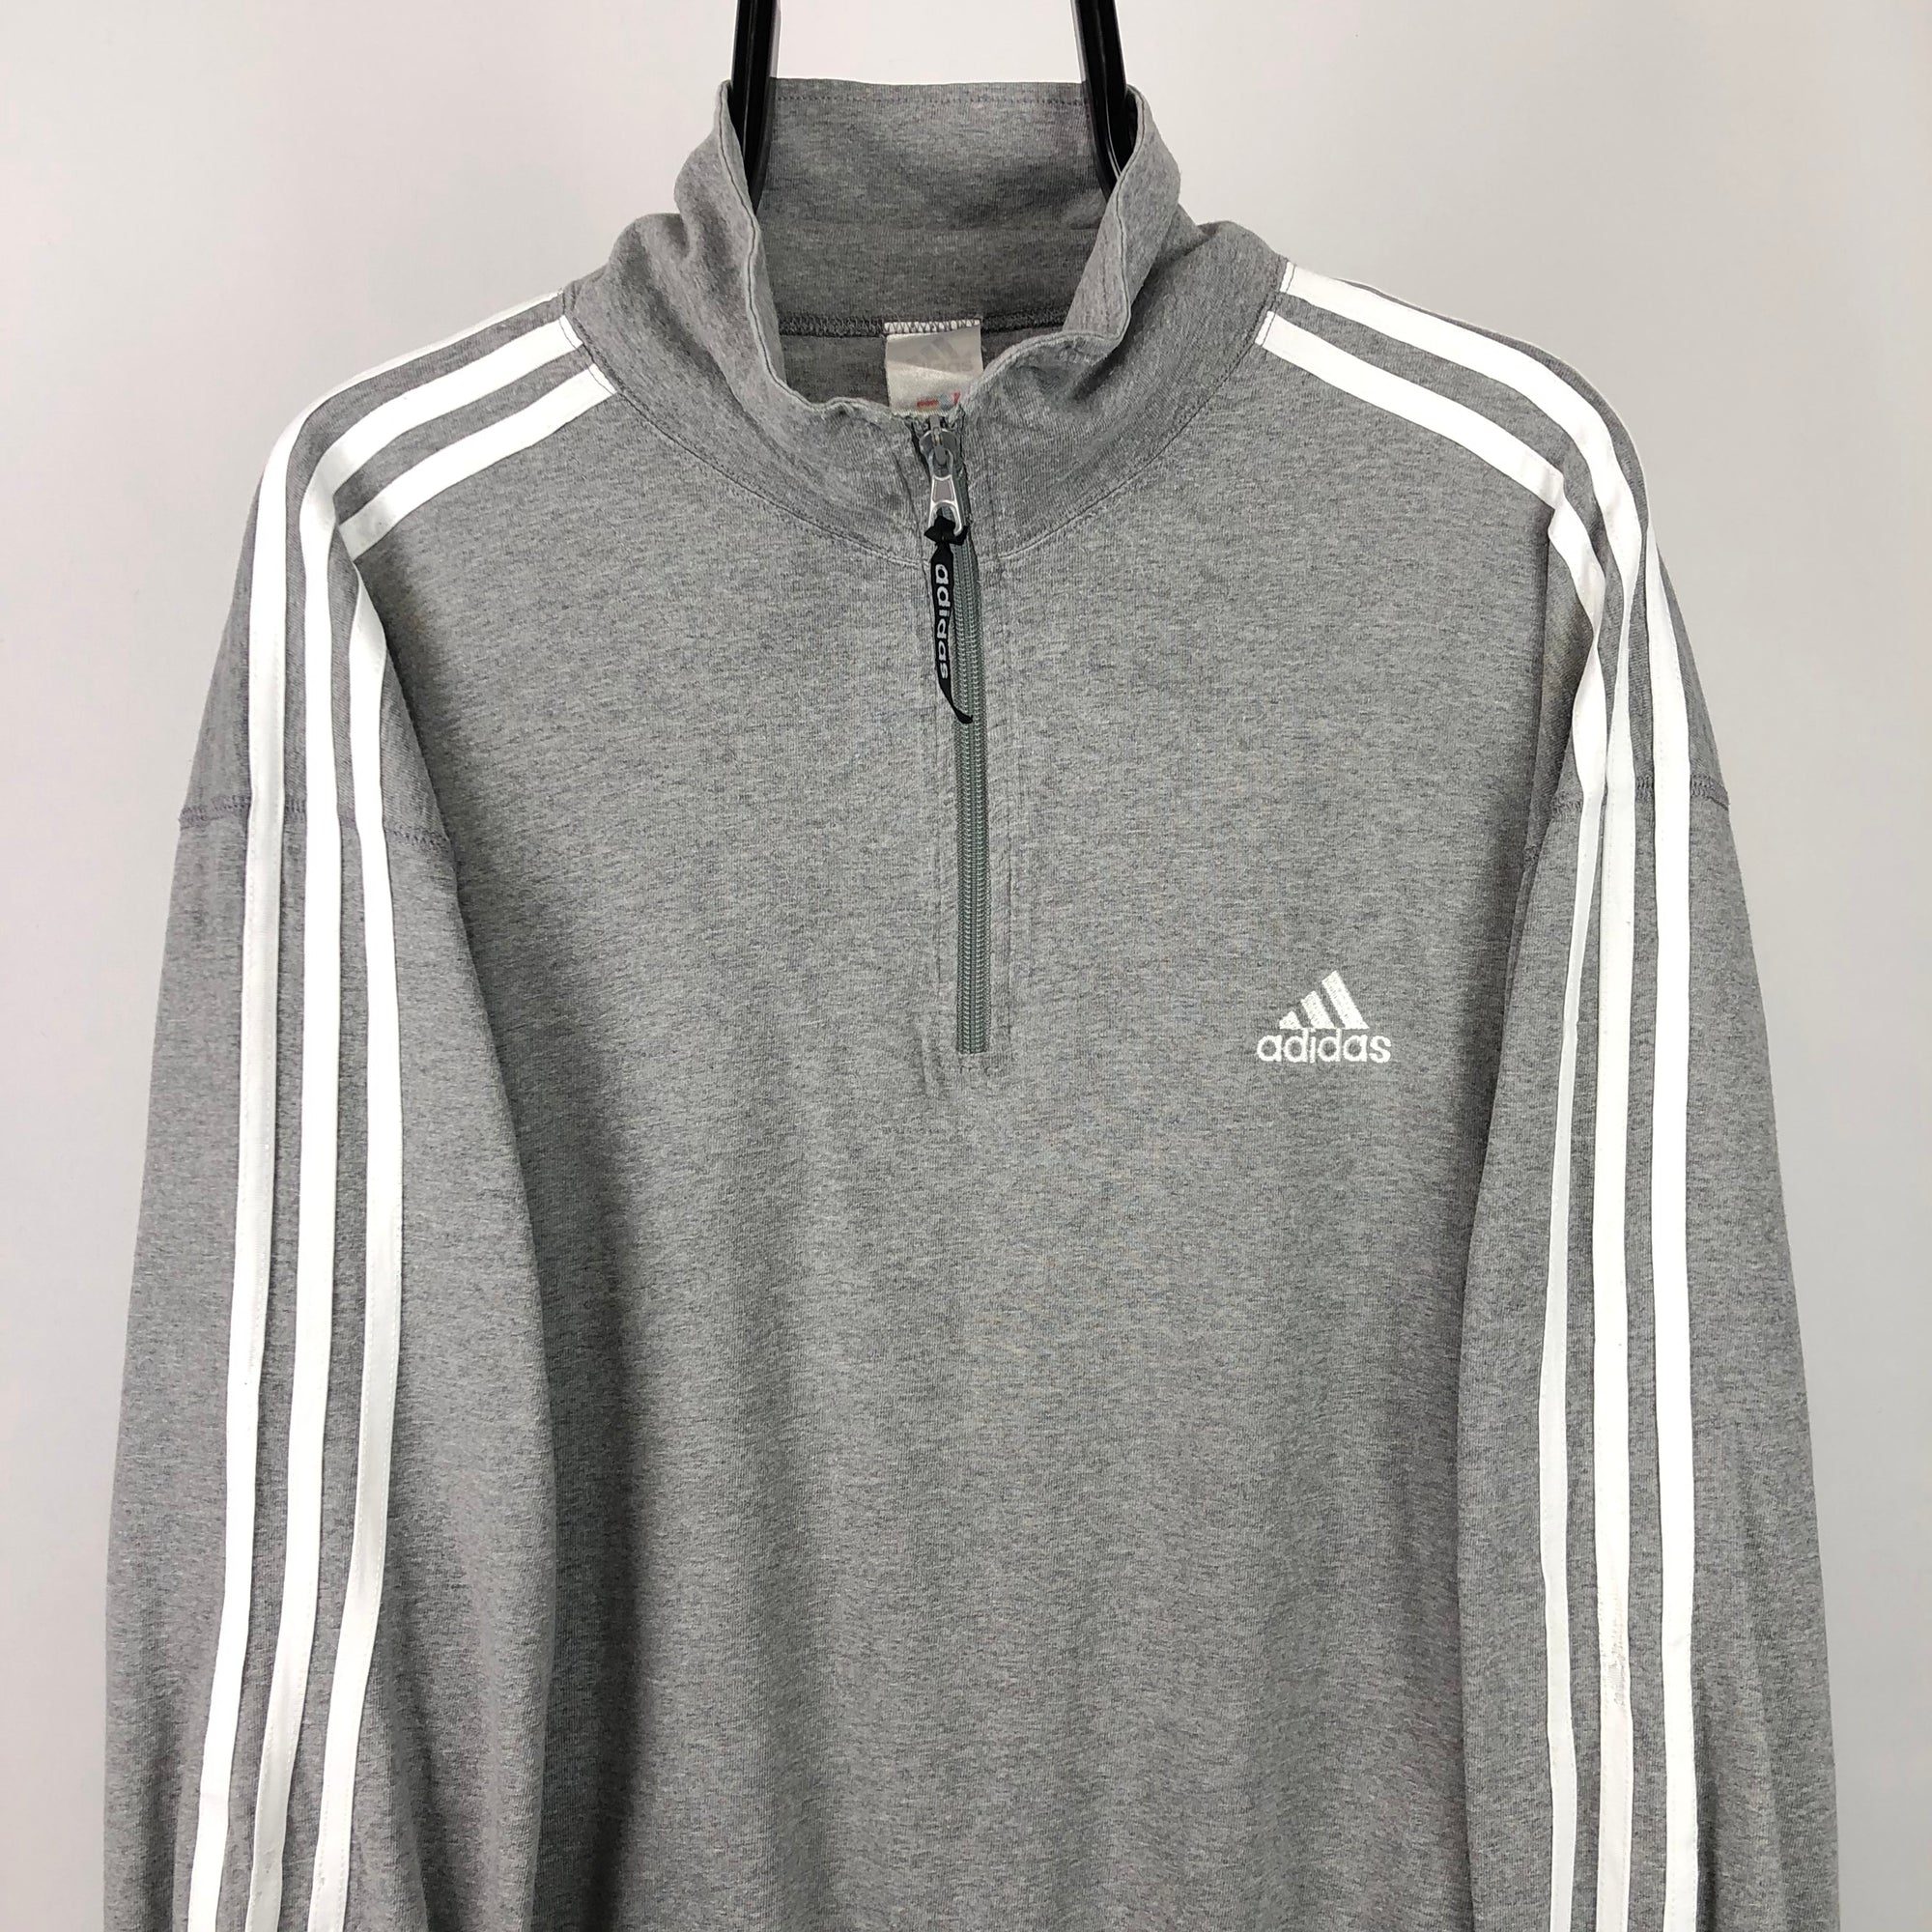 Vintage 90s Adidas Lightweight 1/4 Zip Sweatshirt in Grey - Men's Large/Women's XL